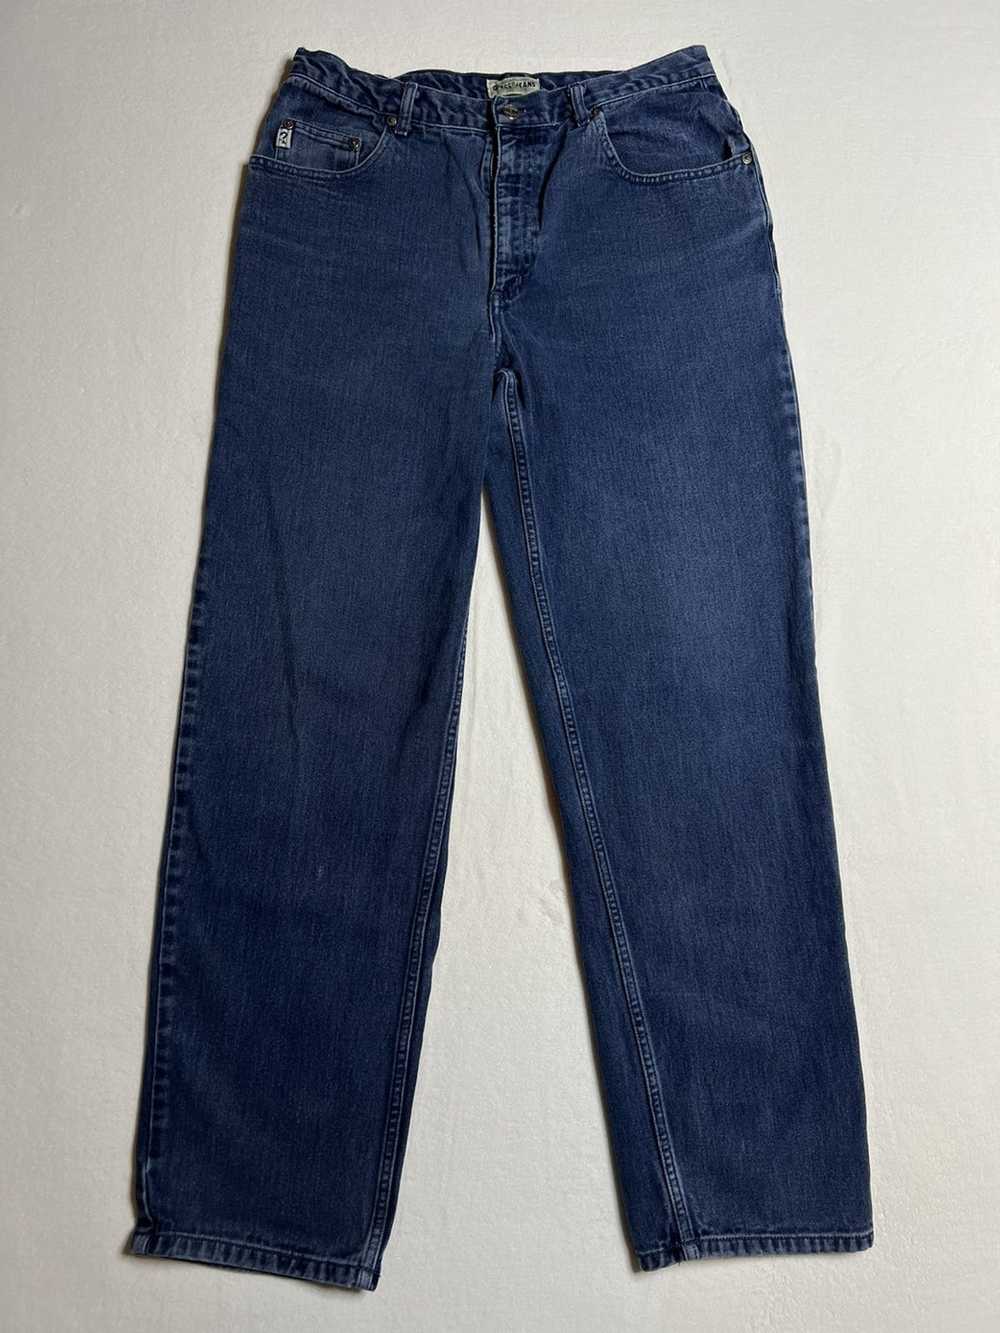 Guess Vintage Guess Denim Pants - image 1